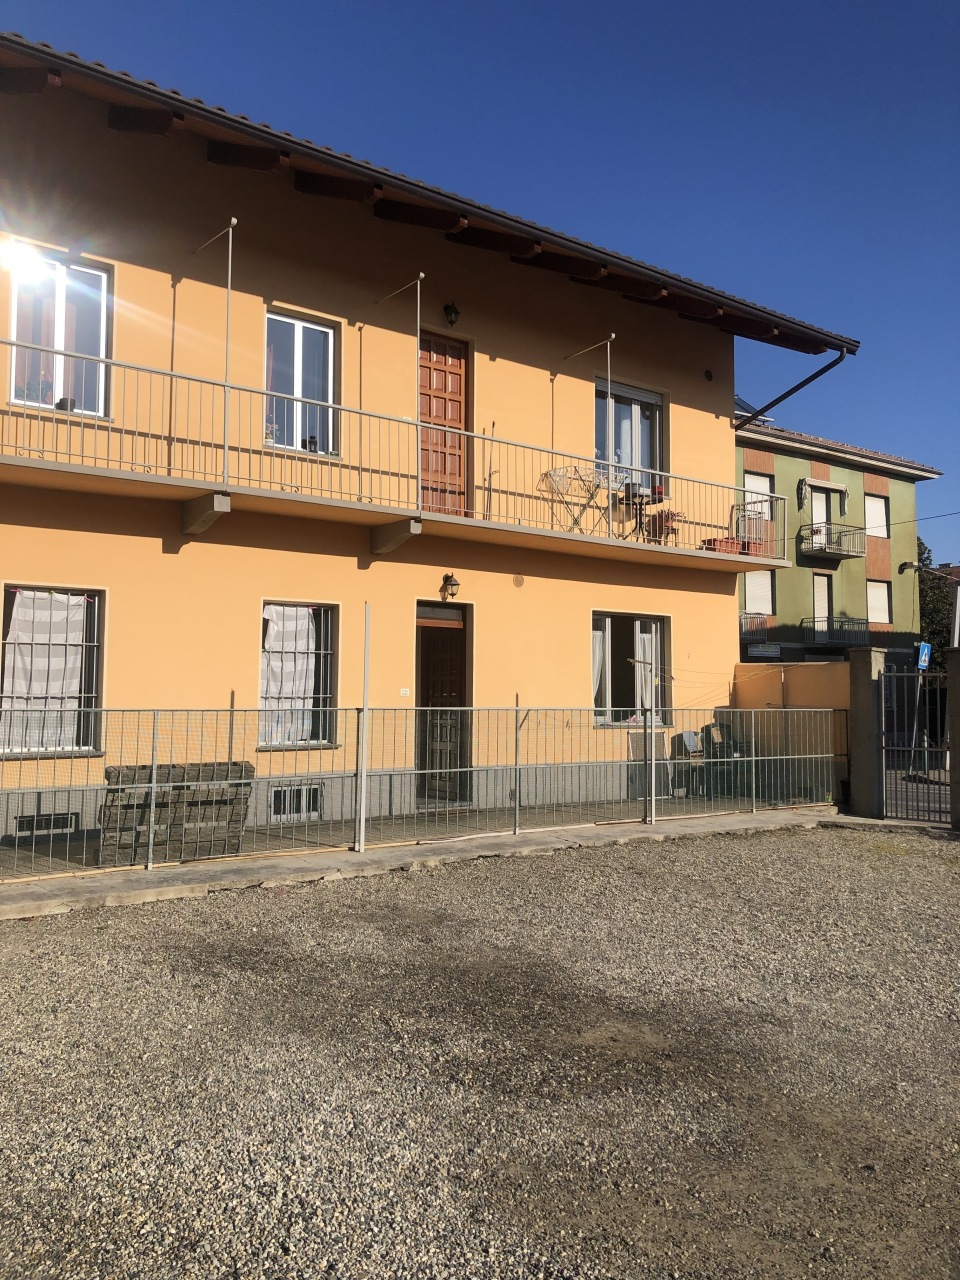 Appartamento in affitto a Alpignano, 2 locali, prezzo € 400 | PortaleAgenzieImmobiliari.it